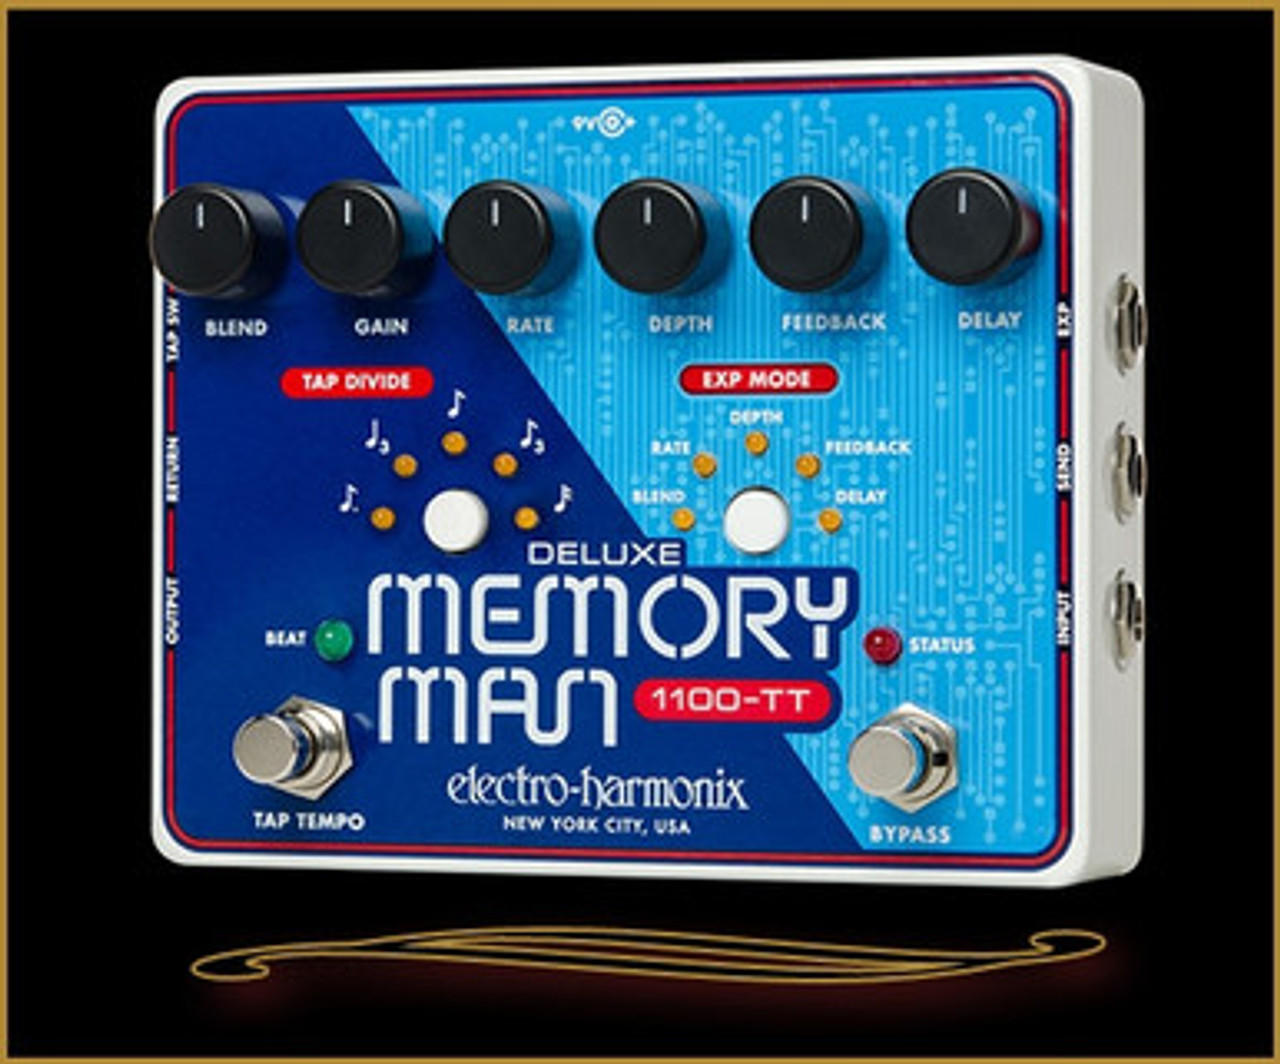 Electro Harmonix Deluxe Memory Man 1100-TT with Tap Tempo